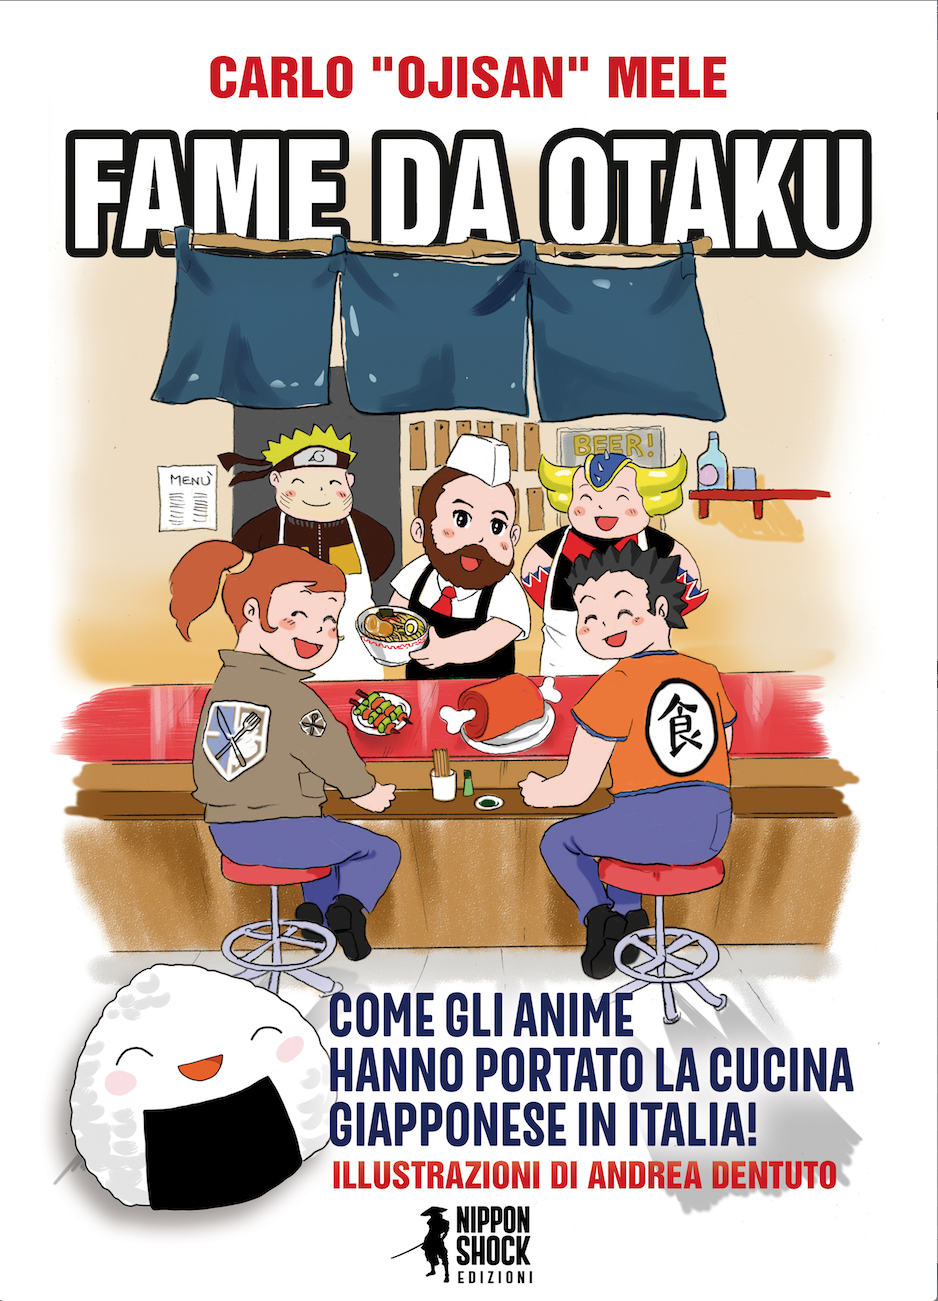 Fame da Otaku! Come gli anime e i manga hanno fatto innamorare gli italiani della cucina giapponese